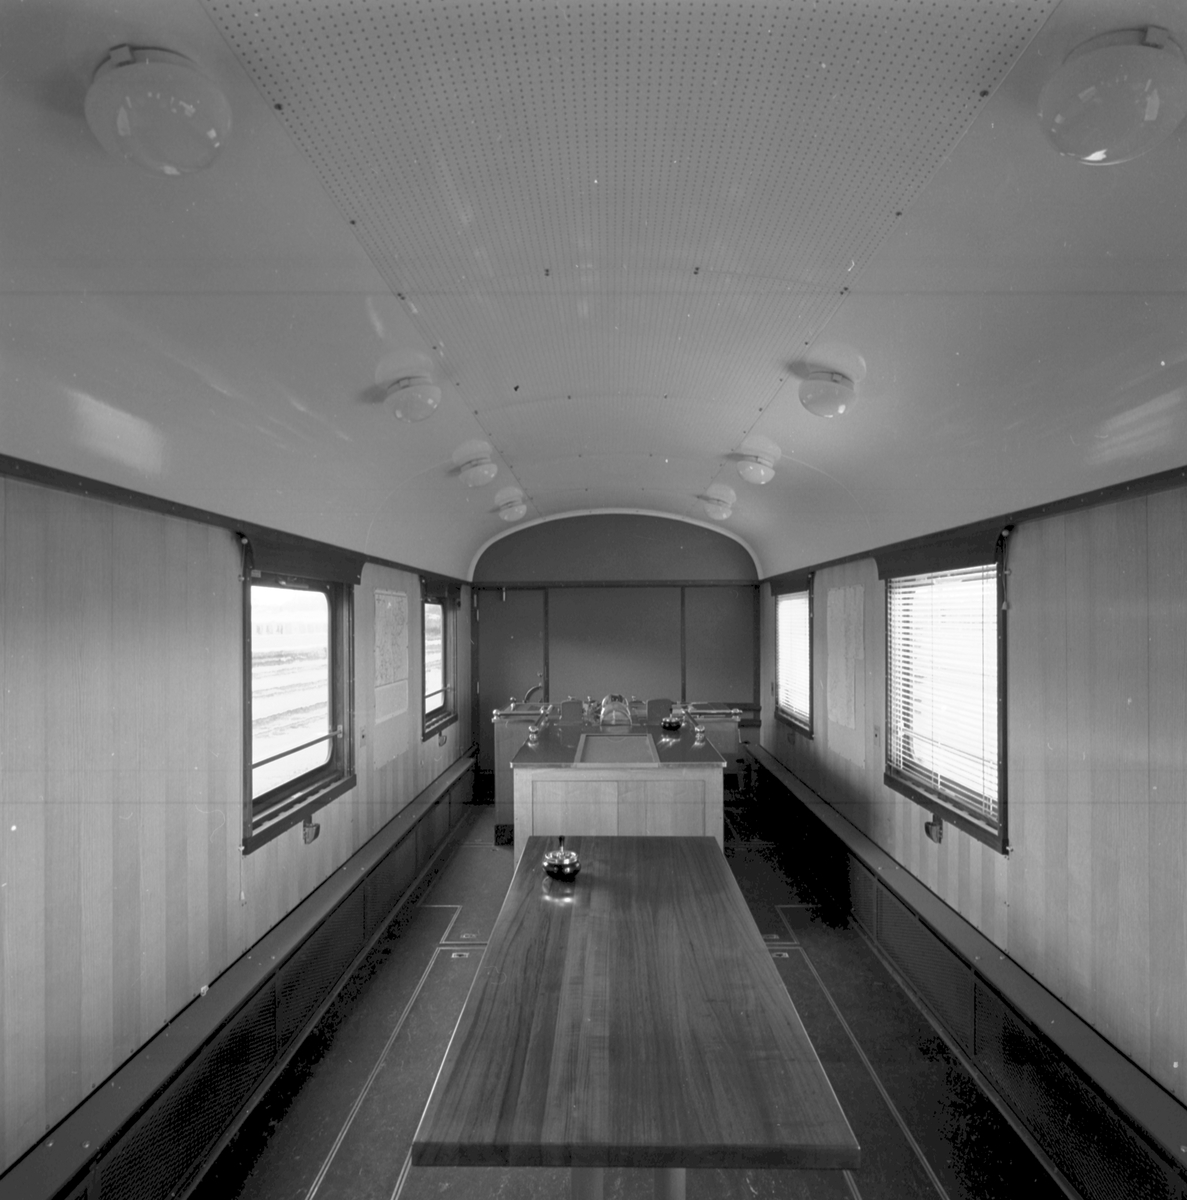 Mätvagn, ”Mauzins mätvagn”, Banverket Qie nr 984 0023. Tillverkad 1958 som SJ So4 nr 4610.
Vagnen är i slitet bruksskick som vid avställningen 1996 och obetydligt ombyggd. Det är en unik specialvagn och välbevarad arbetsmiljö vid järnvägen från slutet av 1900-talet. Vagnen har ett pentry med kylskåp, diskbänk och varmvattenberedare. Det finns även en avdelning med sovplatser. Vagnen var aldrig ombyggd trots lång användningstid. Vagnen avviker mot samtida vagnar genom tre boggier, kortare längd och orange färgsättning. Invändigt äkta känsla från Banverket och även SJ banavdelning. I gott trafikskick vid avställningen.